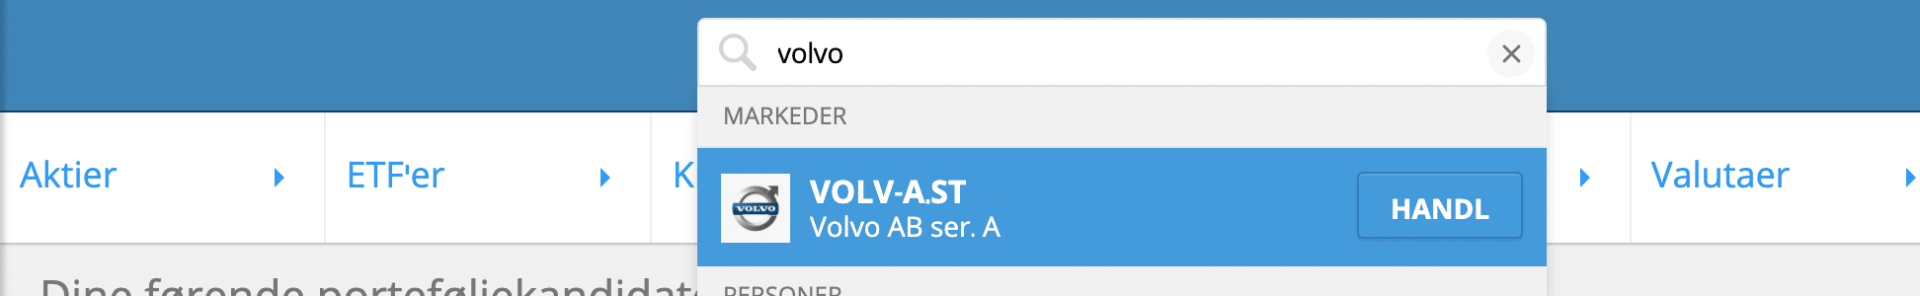 Soeg Volvo